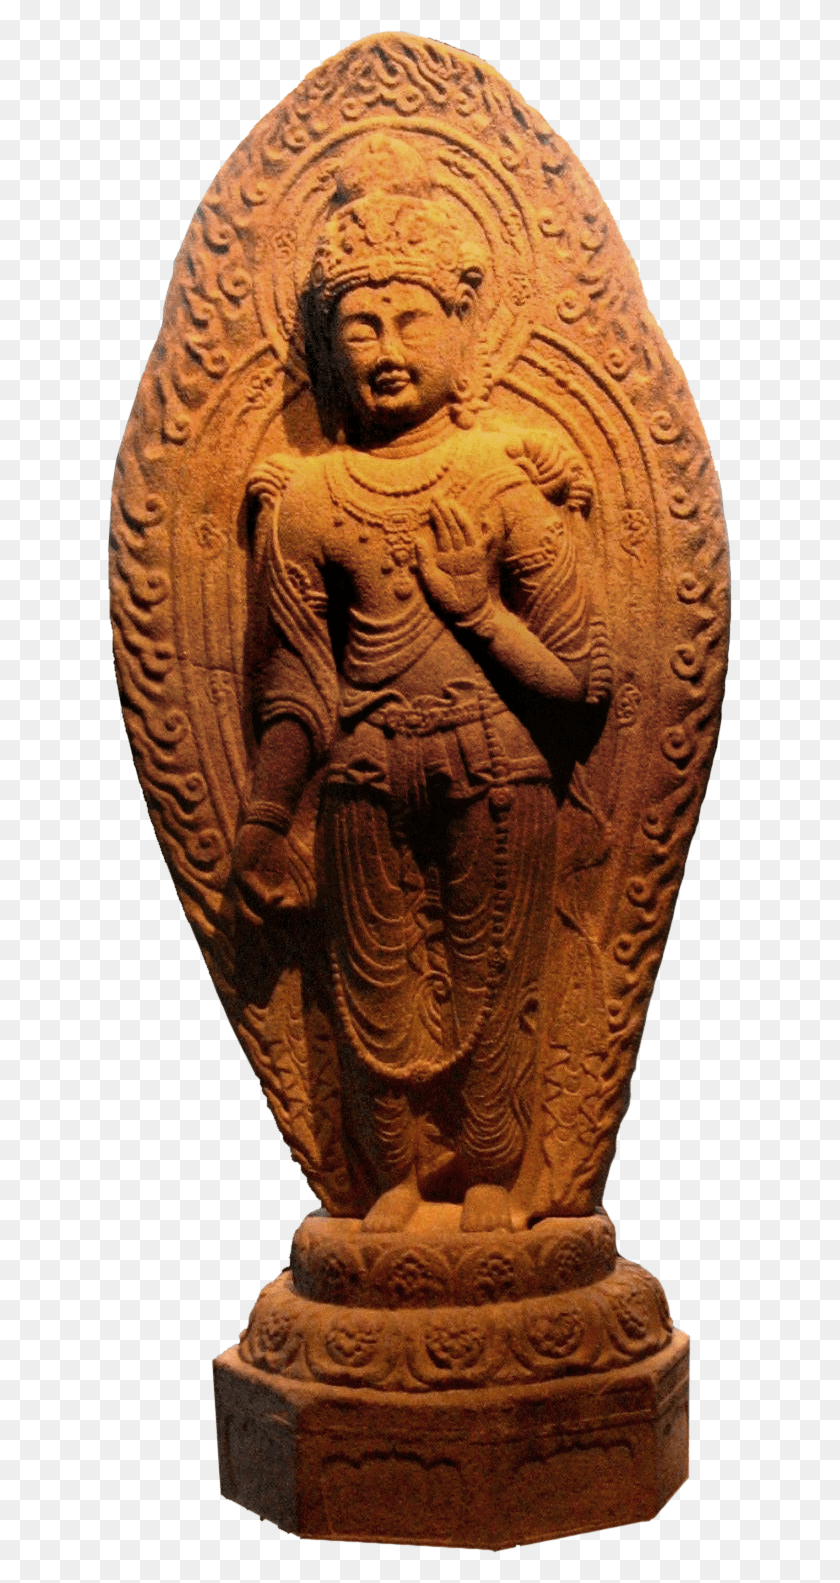 625x1523 El Buda Gemelo Maitreya Tallado, Arqueología, Bronce, Madera Hd Png